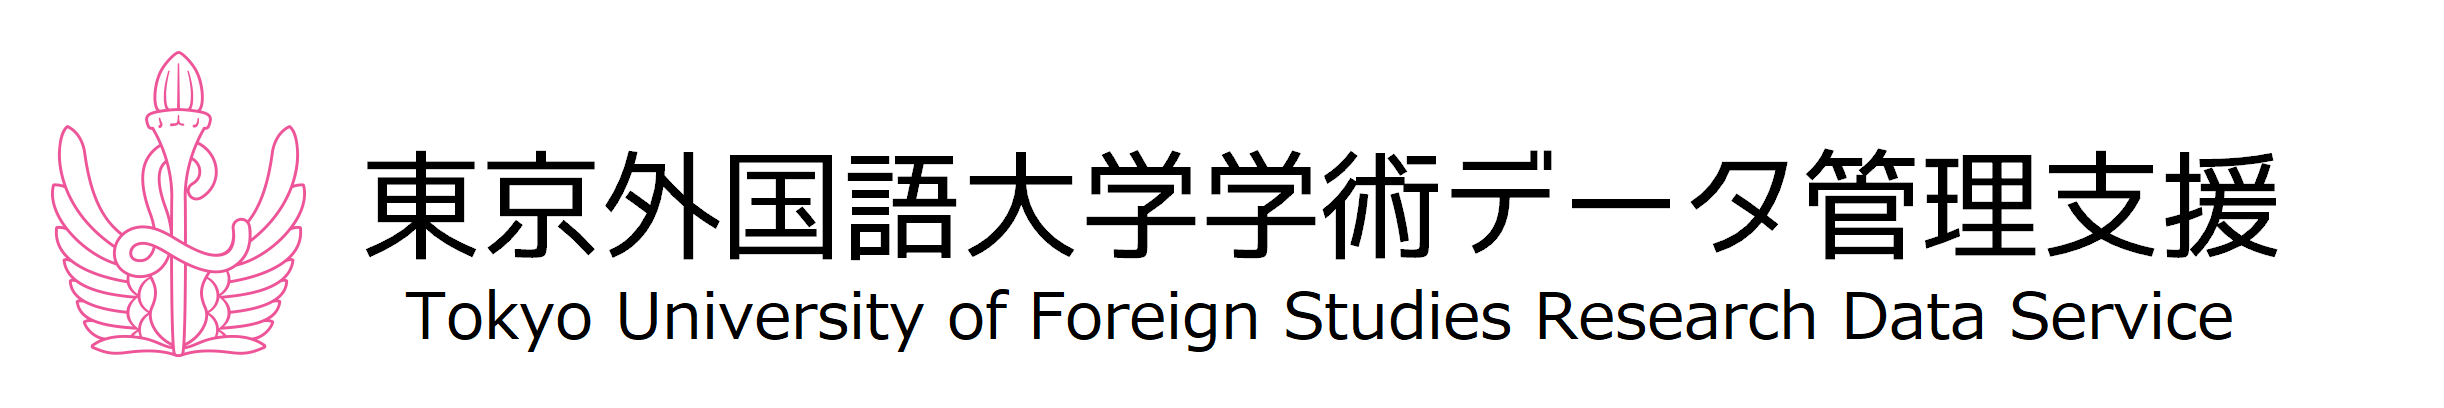 東京外国語大学学術データ管理支援